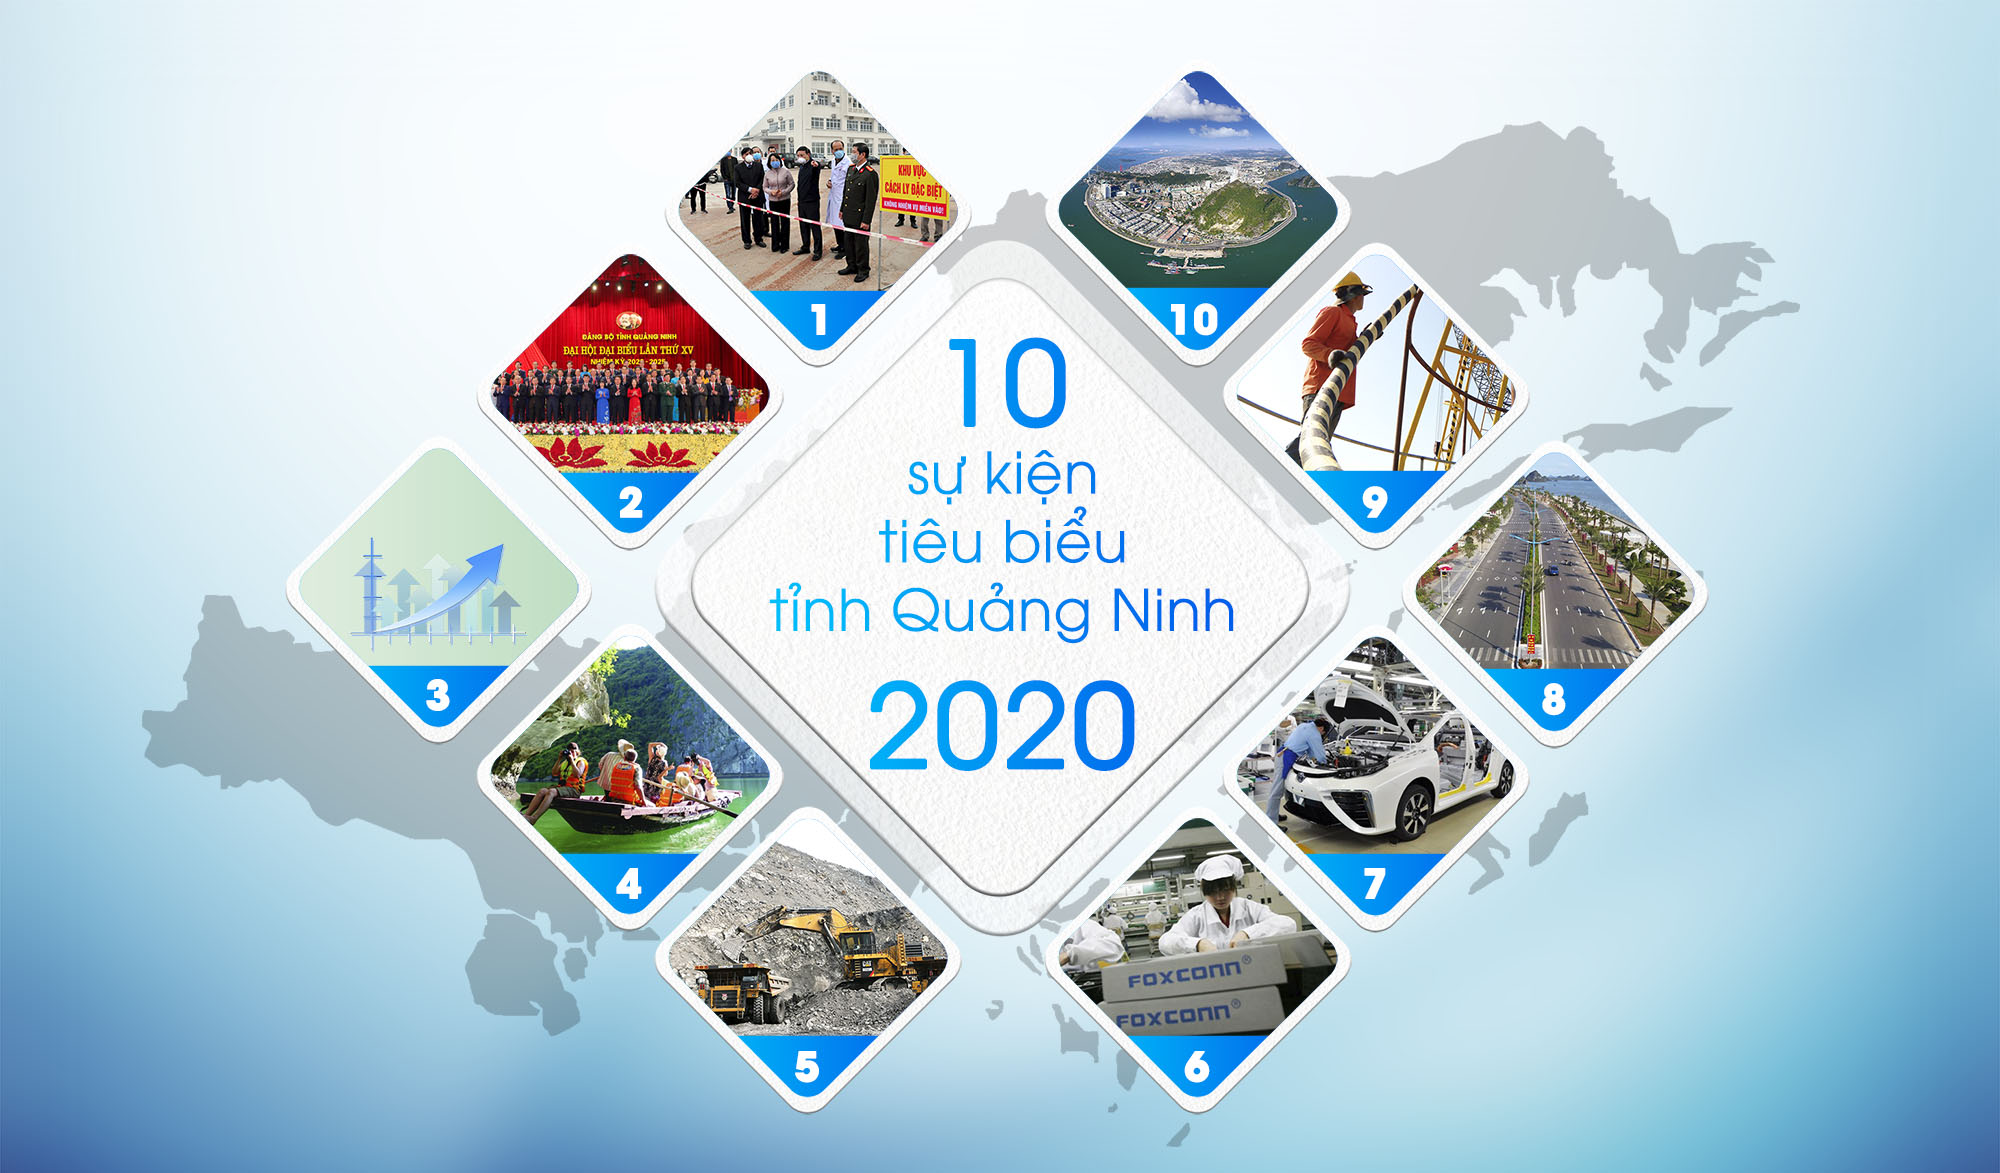 10 sự kiện Quảng Ninh 2020